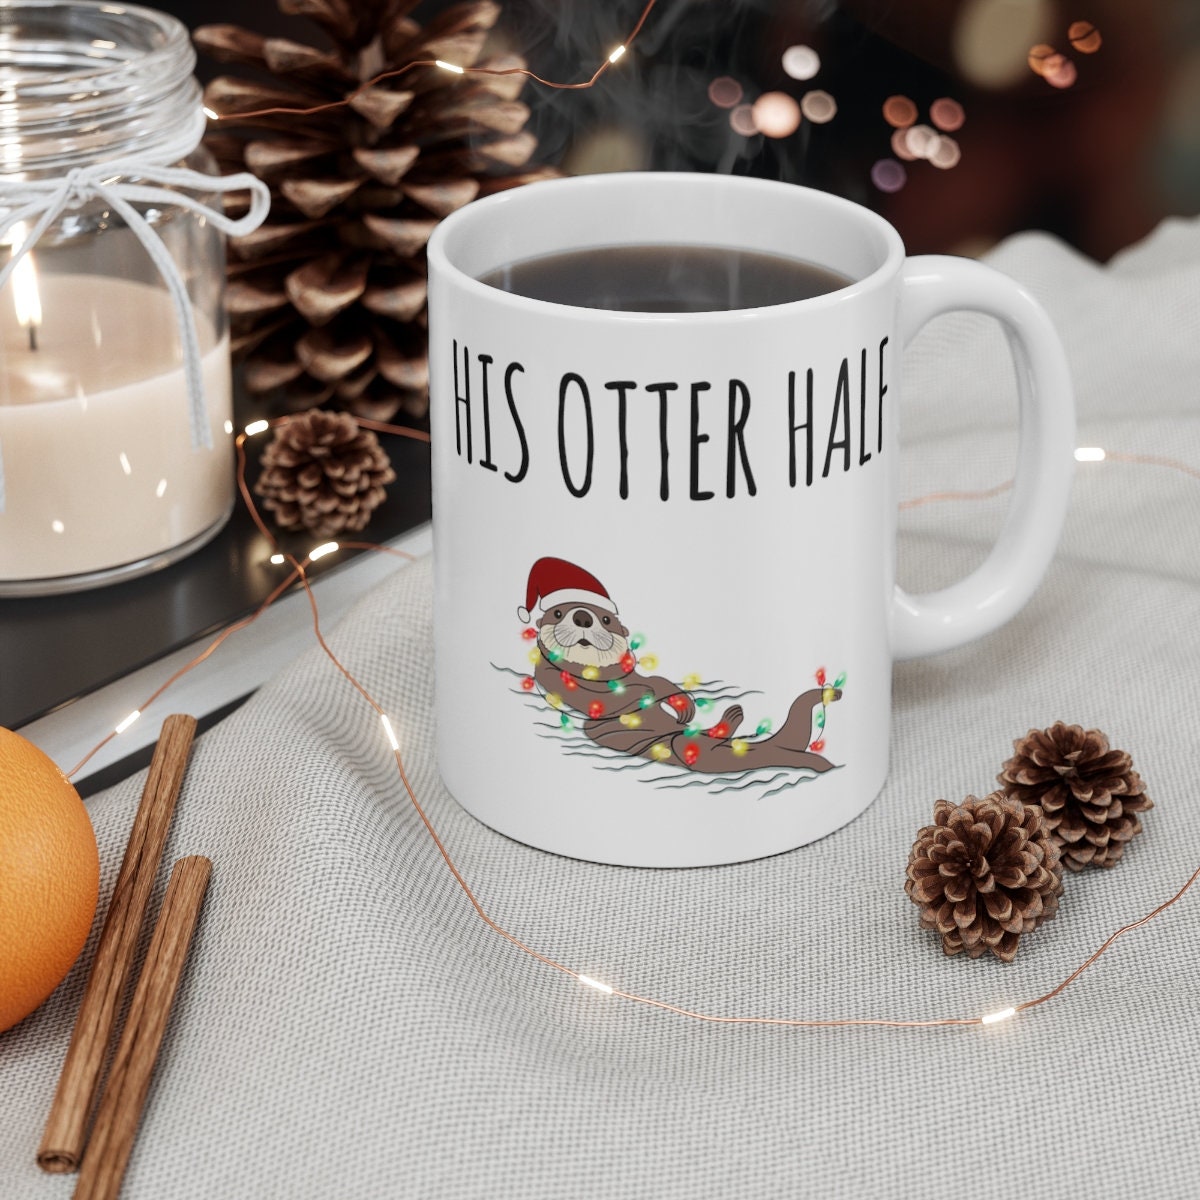 Christmas Couples Mug, Couple Christmas Mugs, Matching His Her Otter Half  Coffee Cup, Gift for Husband Wife Christmas Anniversary Wedding 